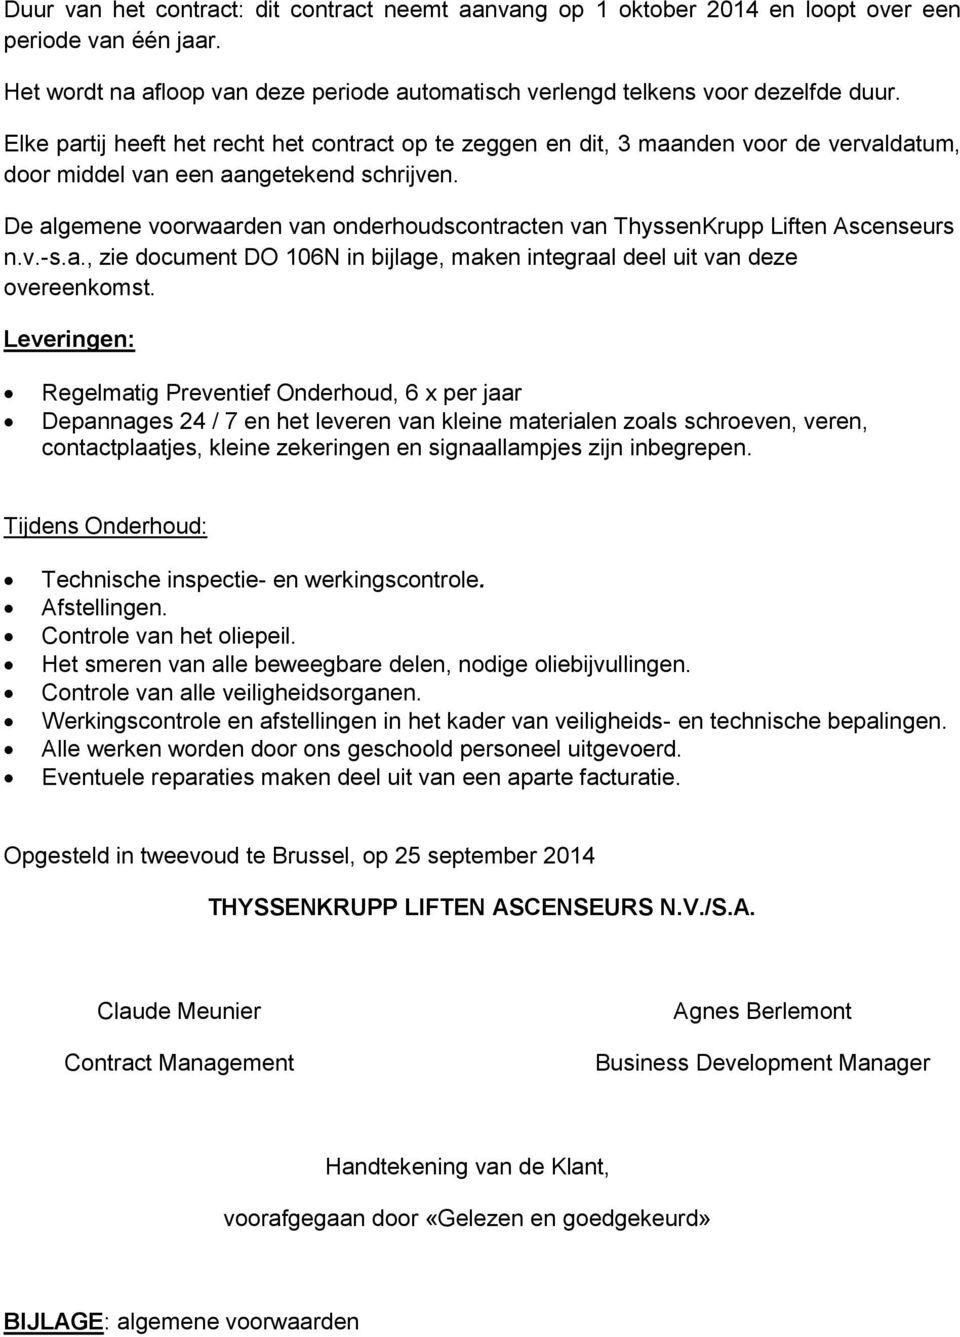 De algemene voorwaarden van onderhoudscontracten van ThyssenKrupp Liften Ascenseurs n.v.-s.a., zie document DO 106N in bijlage, maken integraal deel uit van deze overeenkomst.